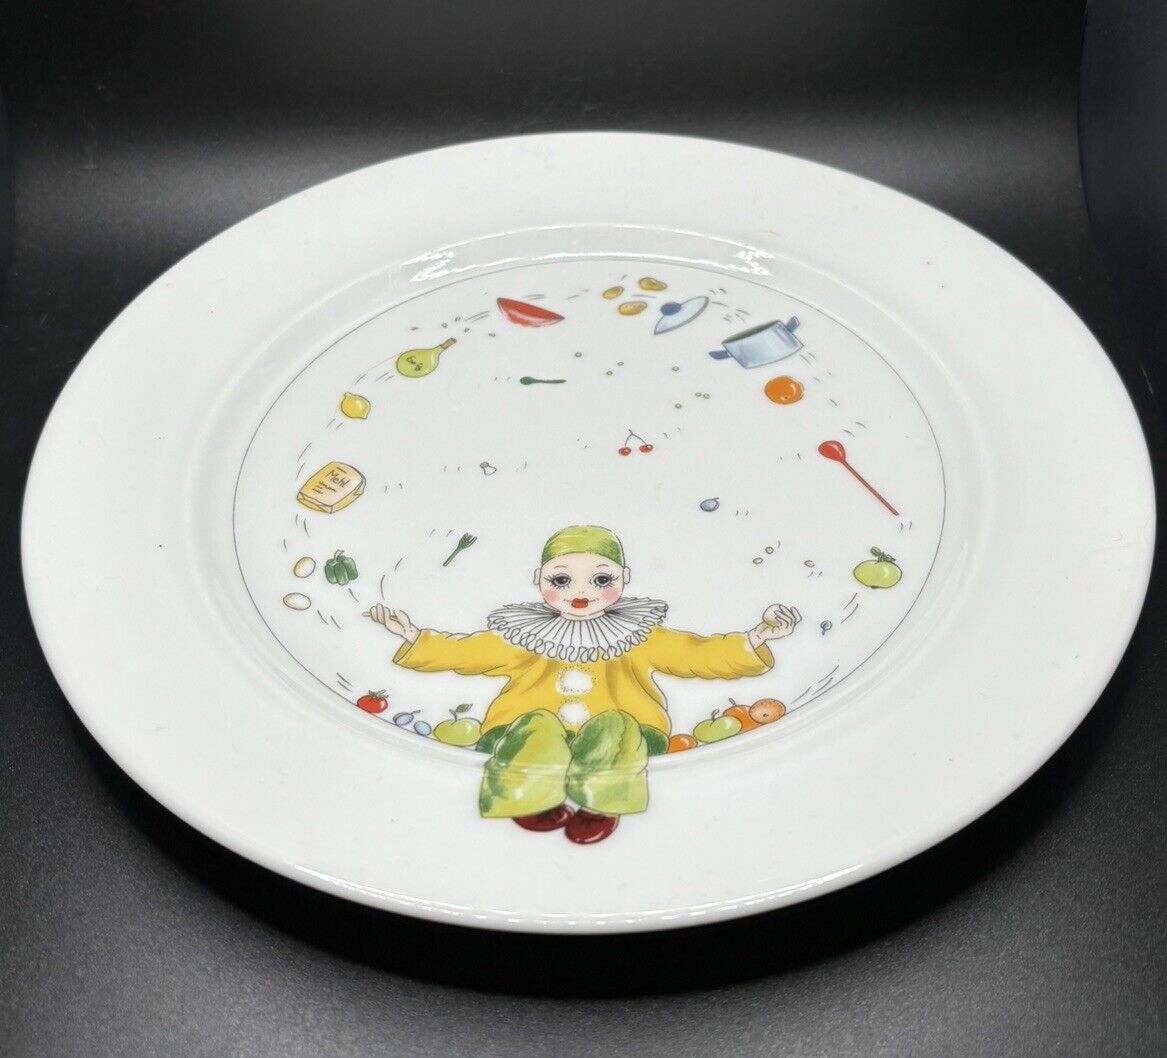 Ateliers De La Cigogne Decorative Plate - Juggling Clown - 7.5” - Vintage